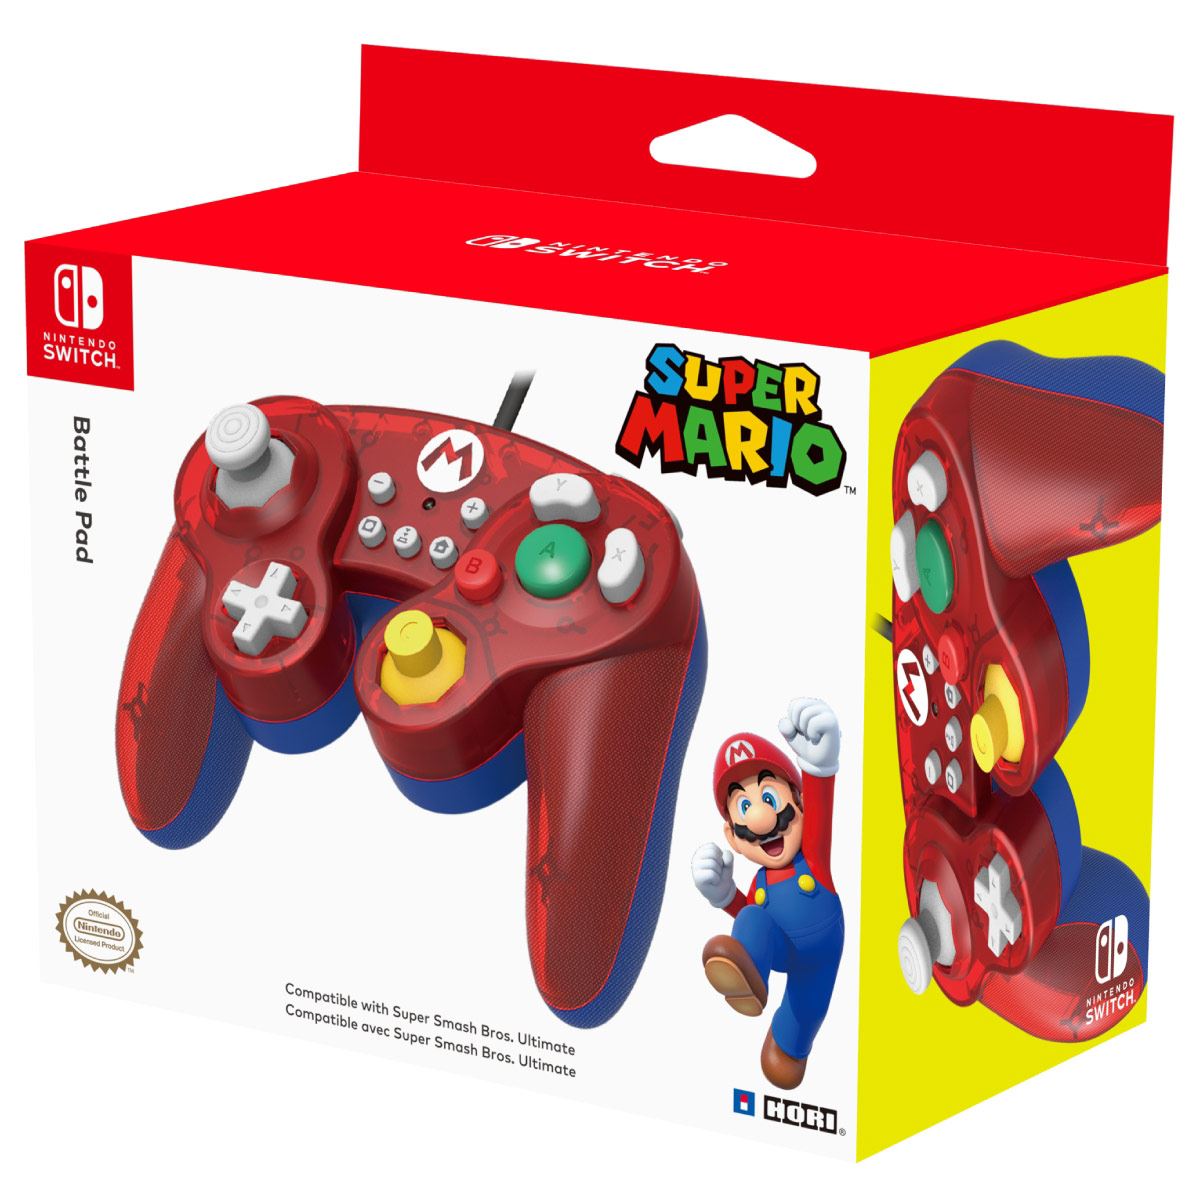 Preciazos en selección de juegos Mario para Nintendo Switch » Chollometro